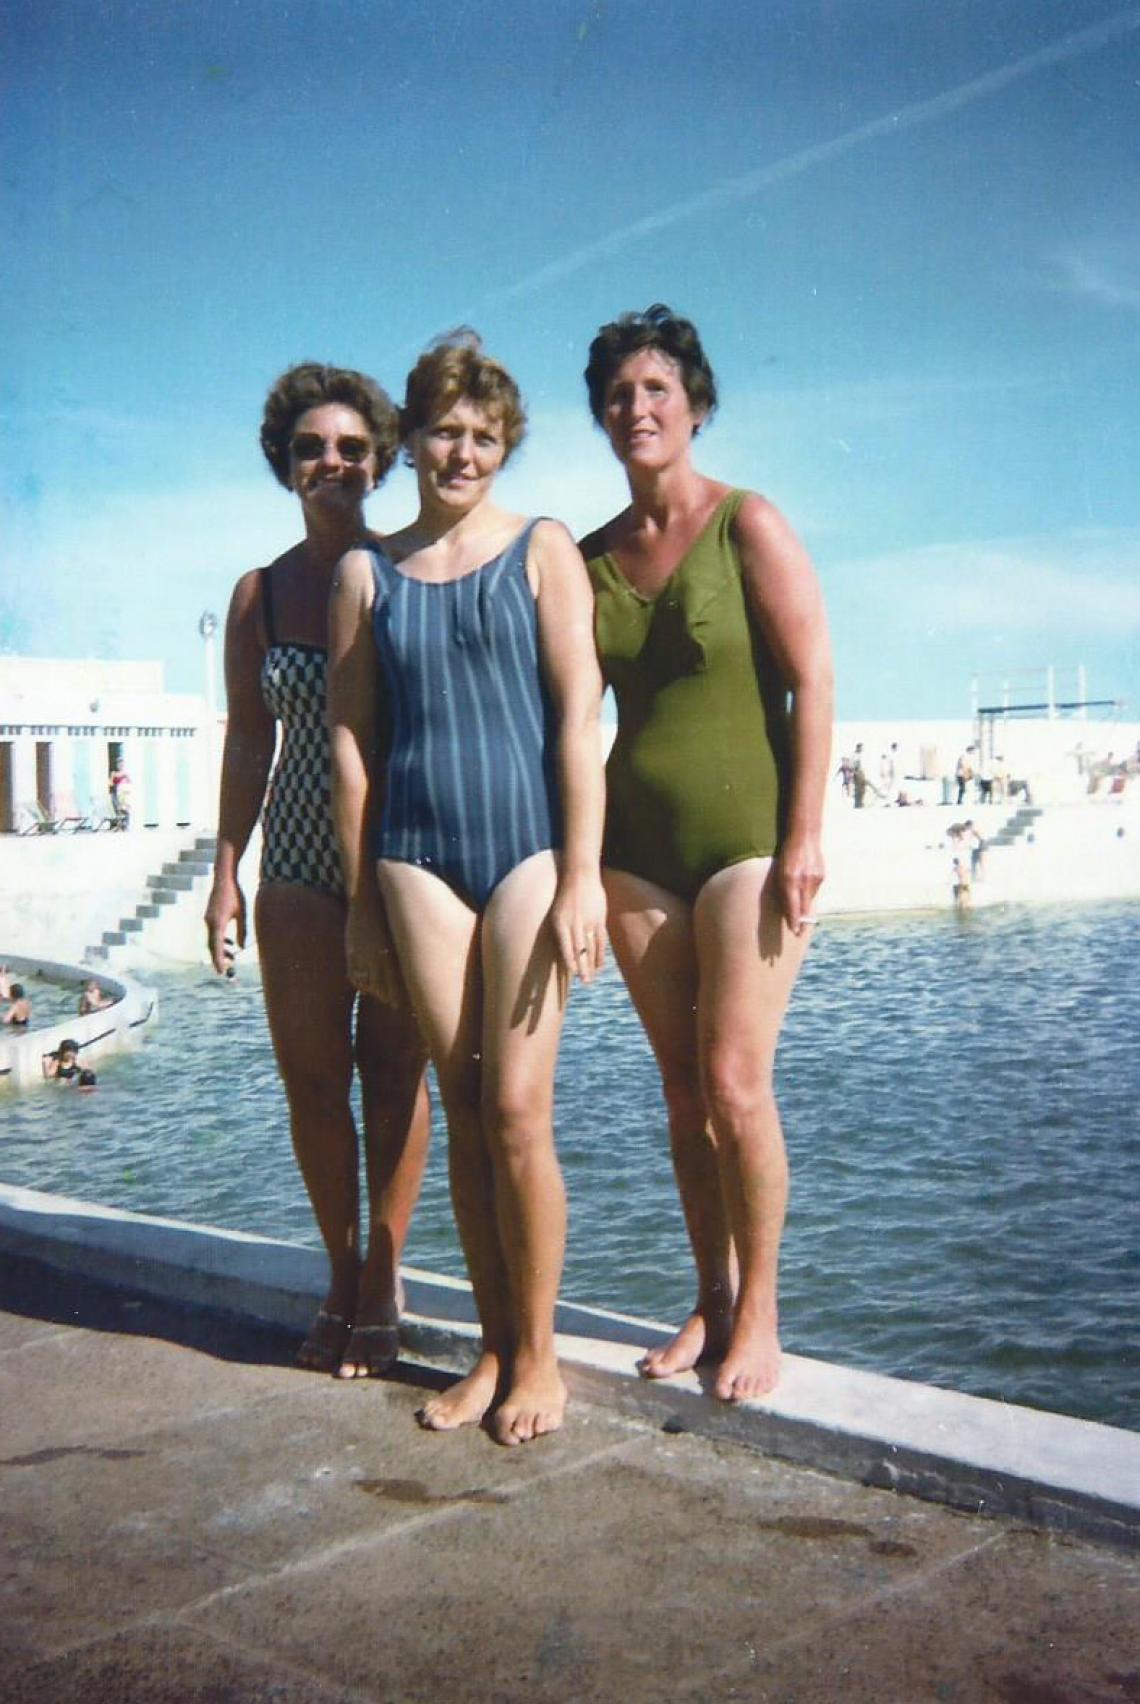 Committee members at the pool from left: Mrs Crowe, Mrs Marsden, Eileen Jilbert